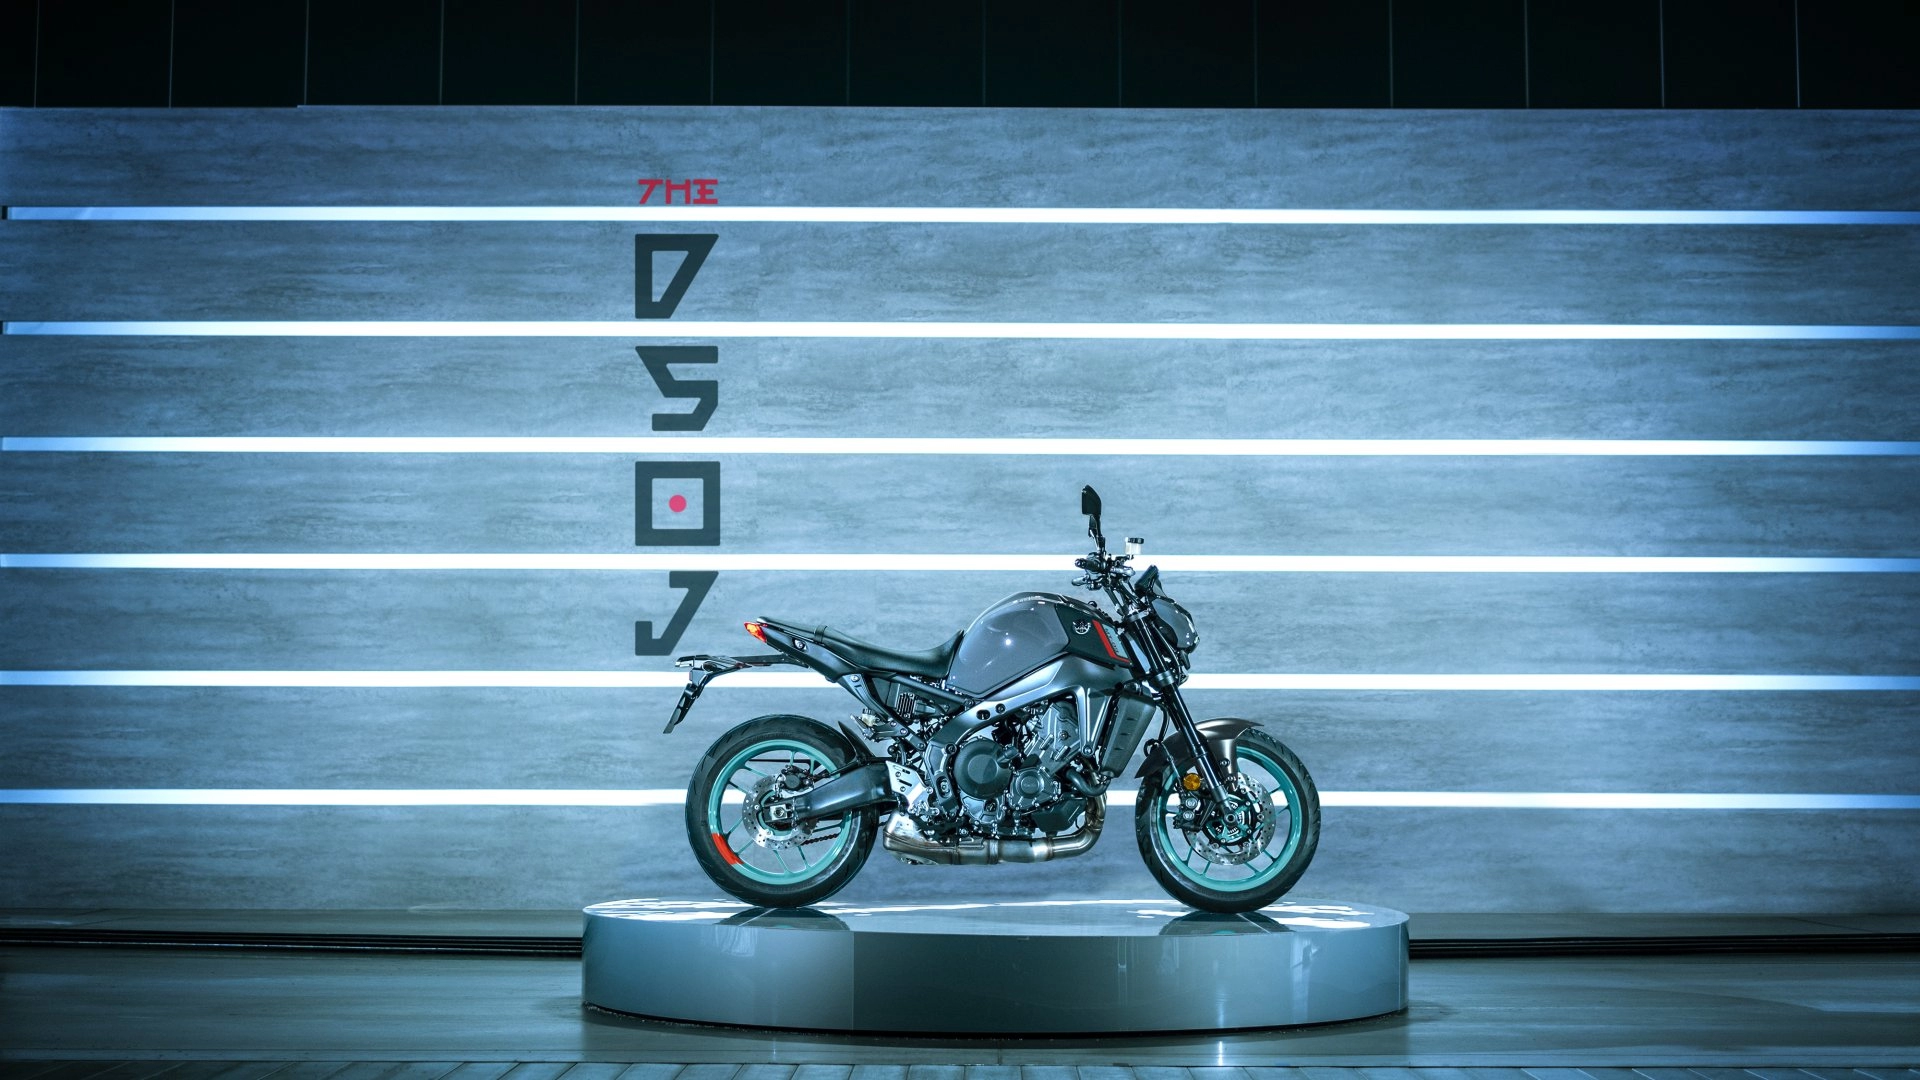 2022 Yamaha MT-09: Revolution of the Icon 